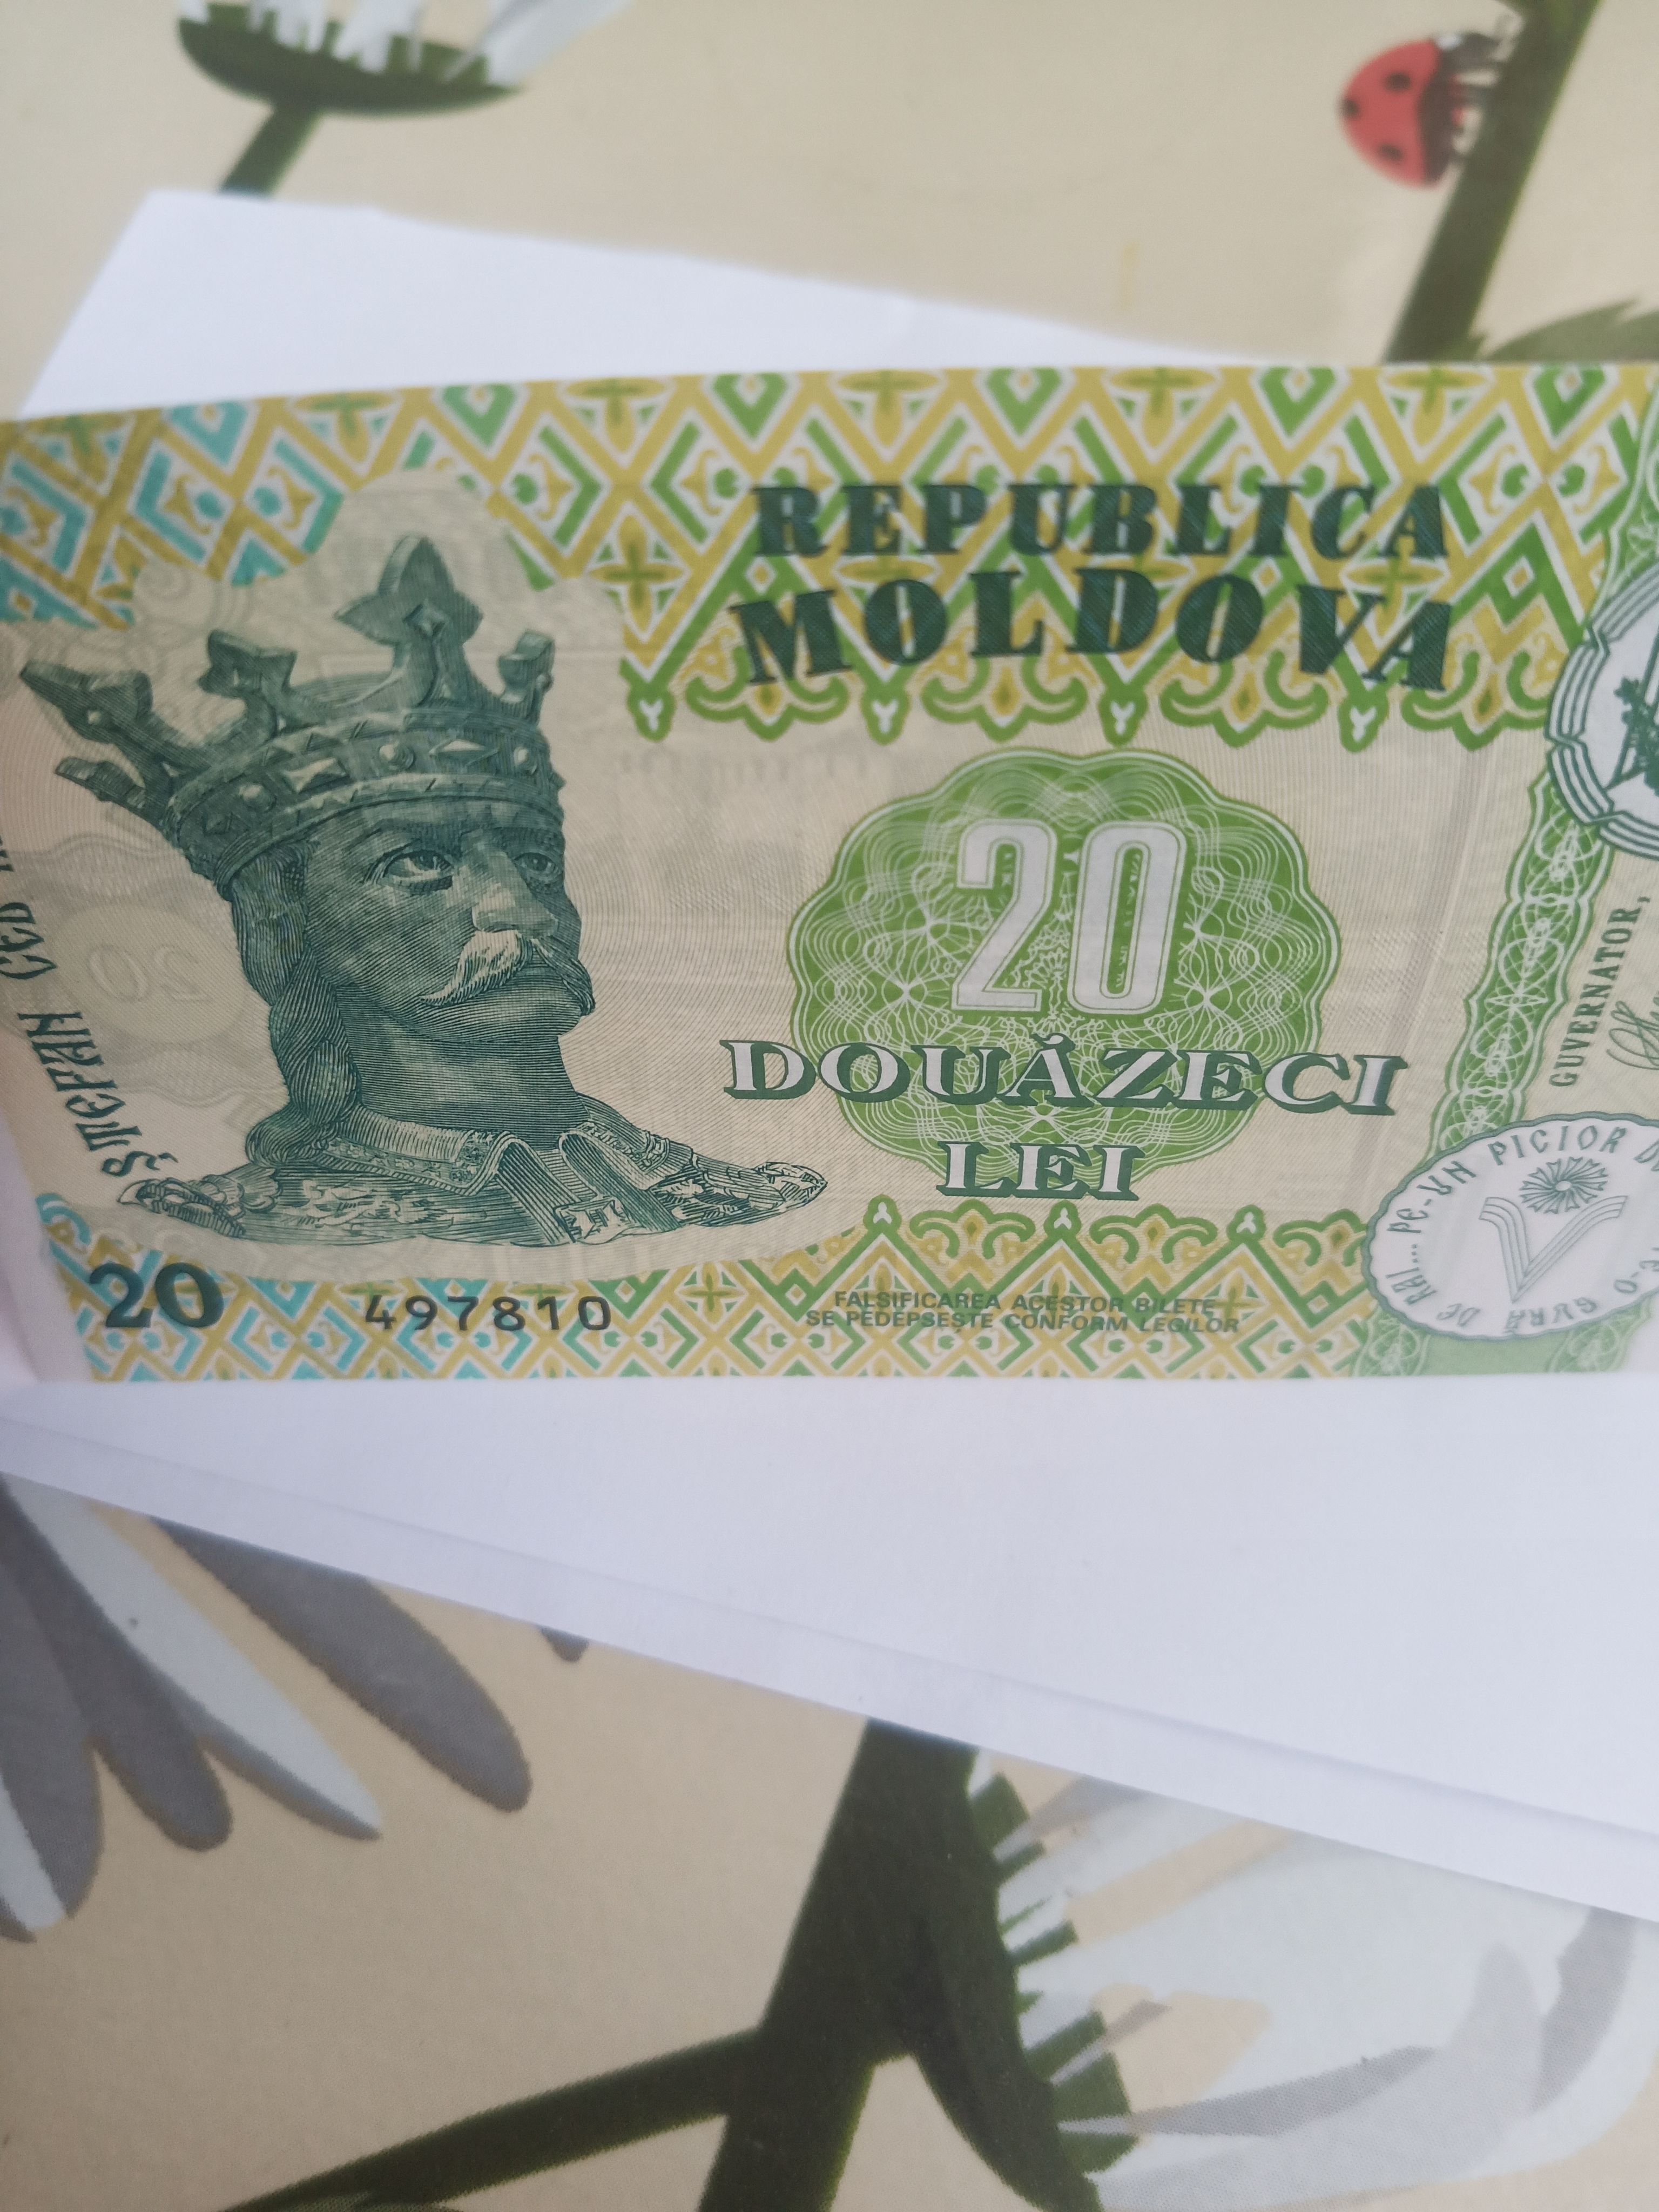 Купюра Республика Молдова 1. 2006 года. Банкноты Нагорного Карабаха. 50 Долларов в леях молдавских.